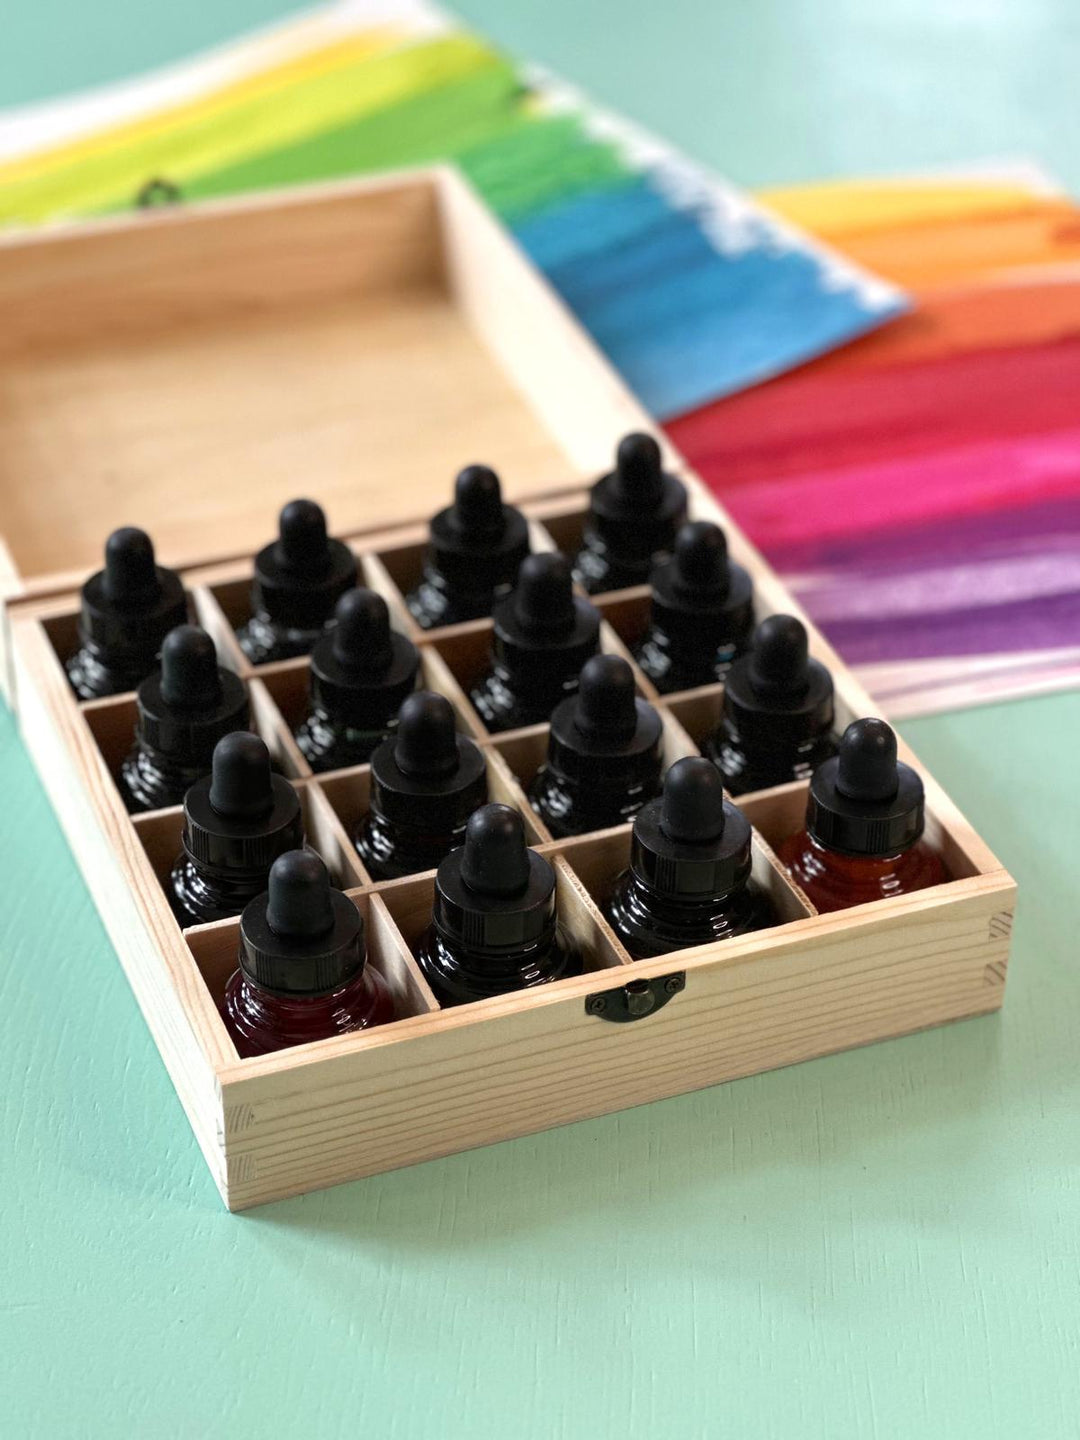 DESDA Flüssigwasserfarben Set mit 16 Farben in Holzkiste